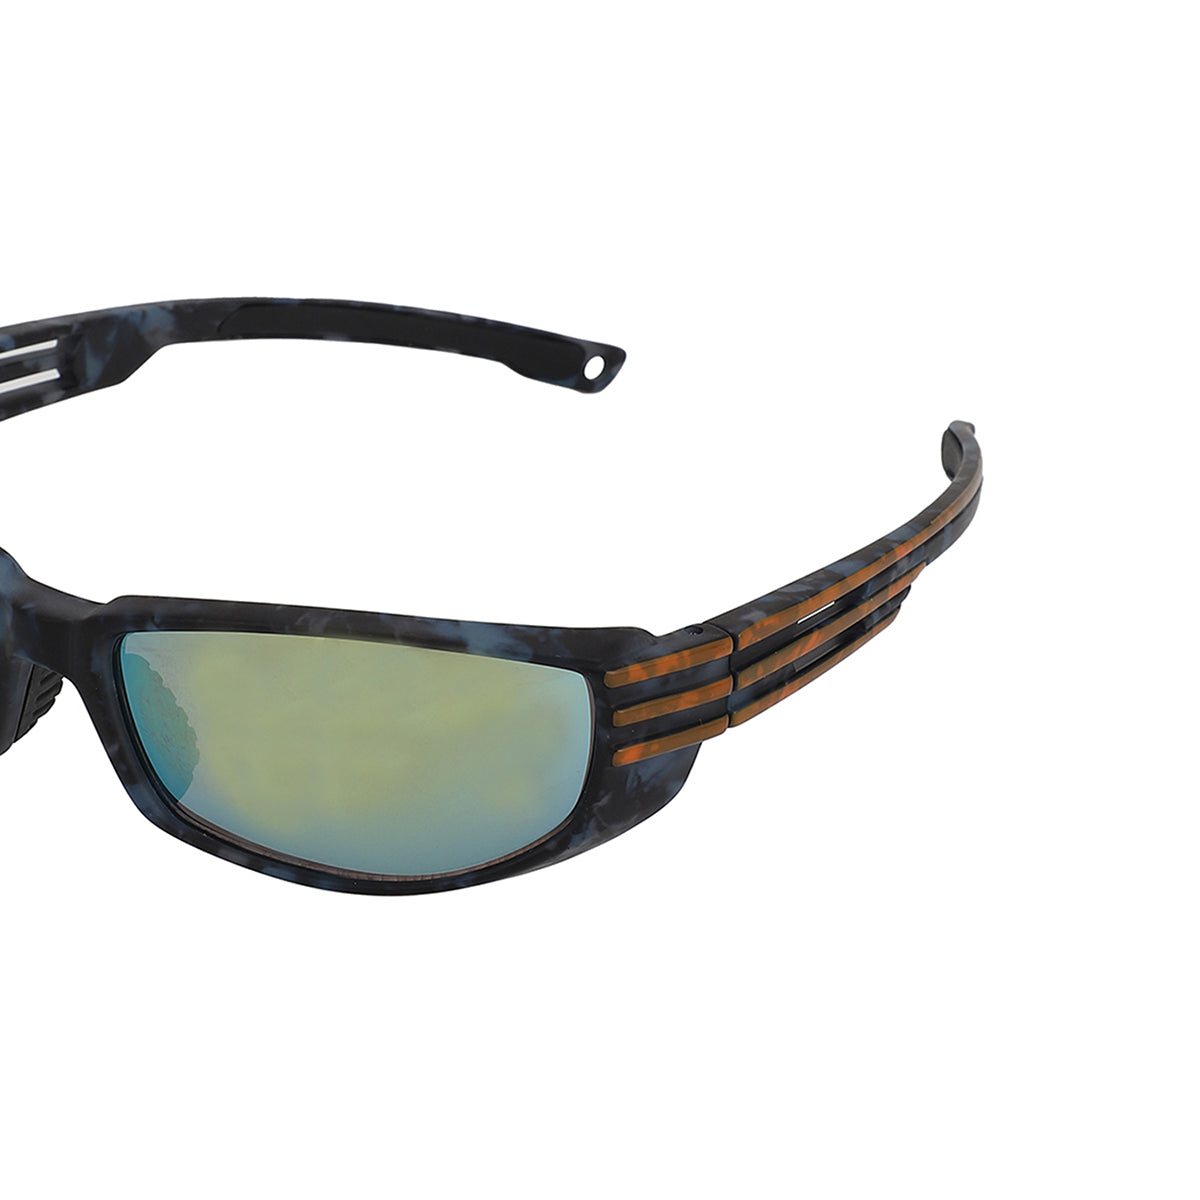 Carlton London Multi Toned Uv Protected Sports Sunglasses For Men